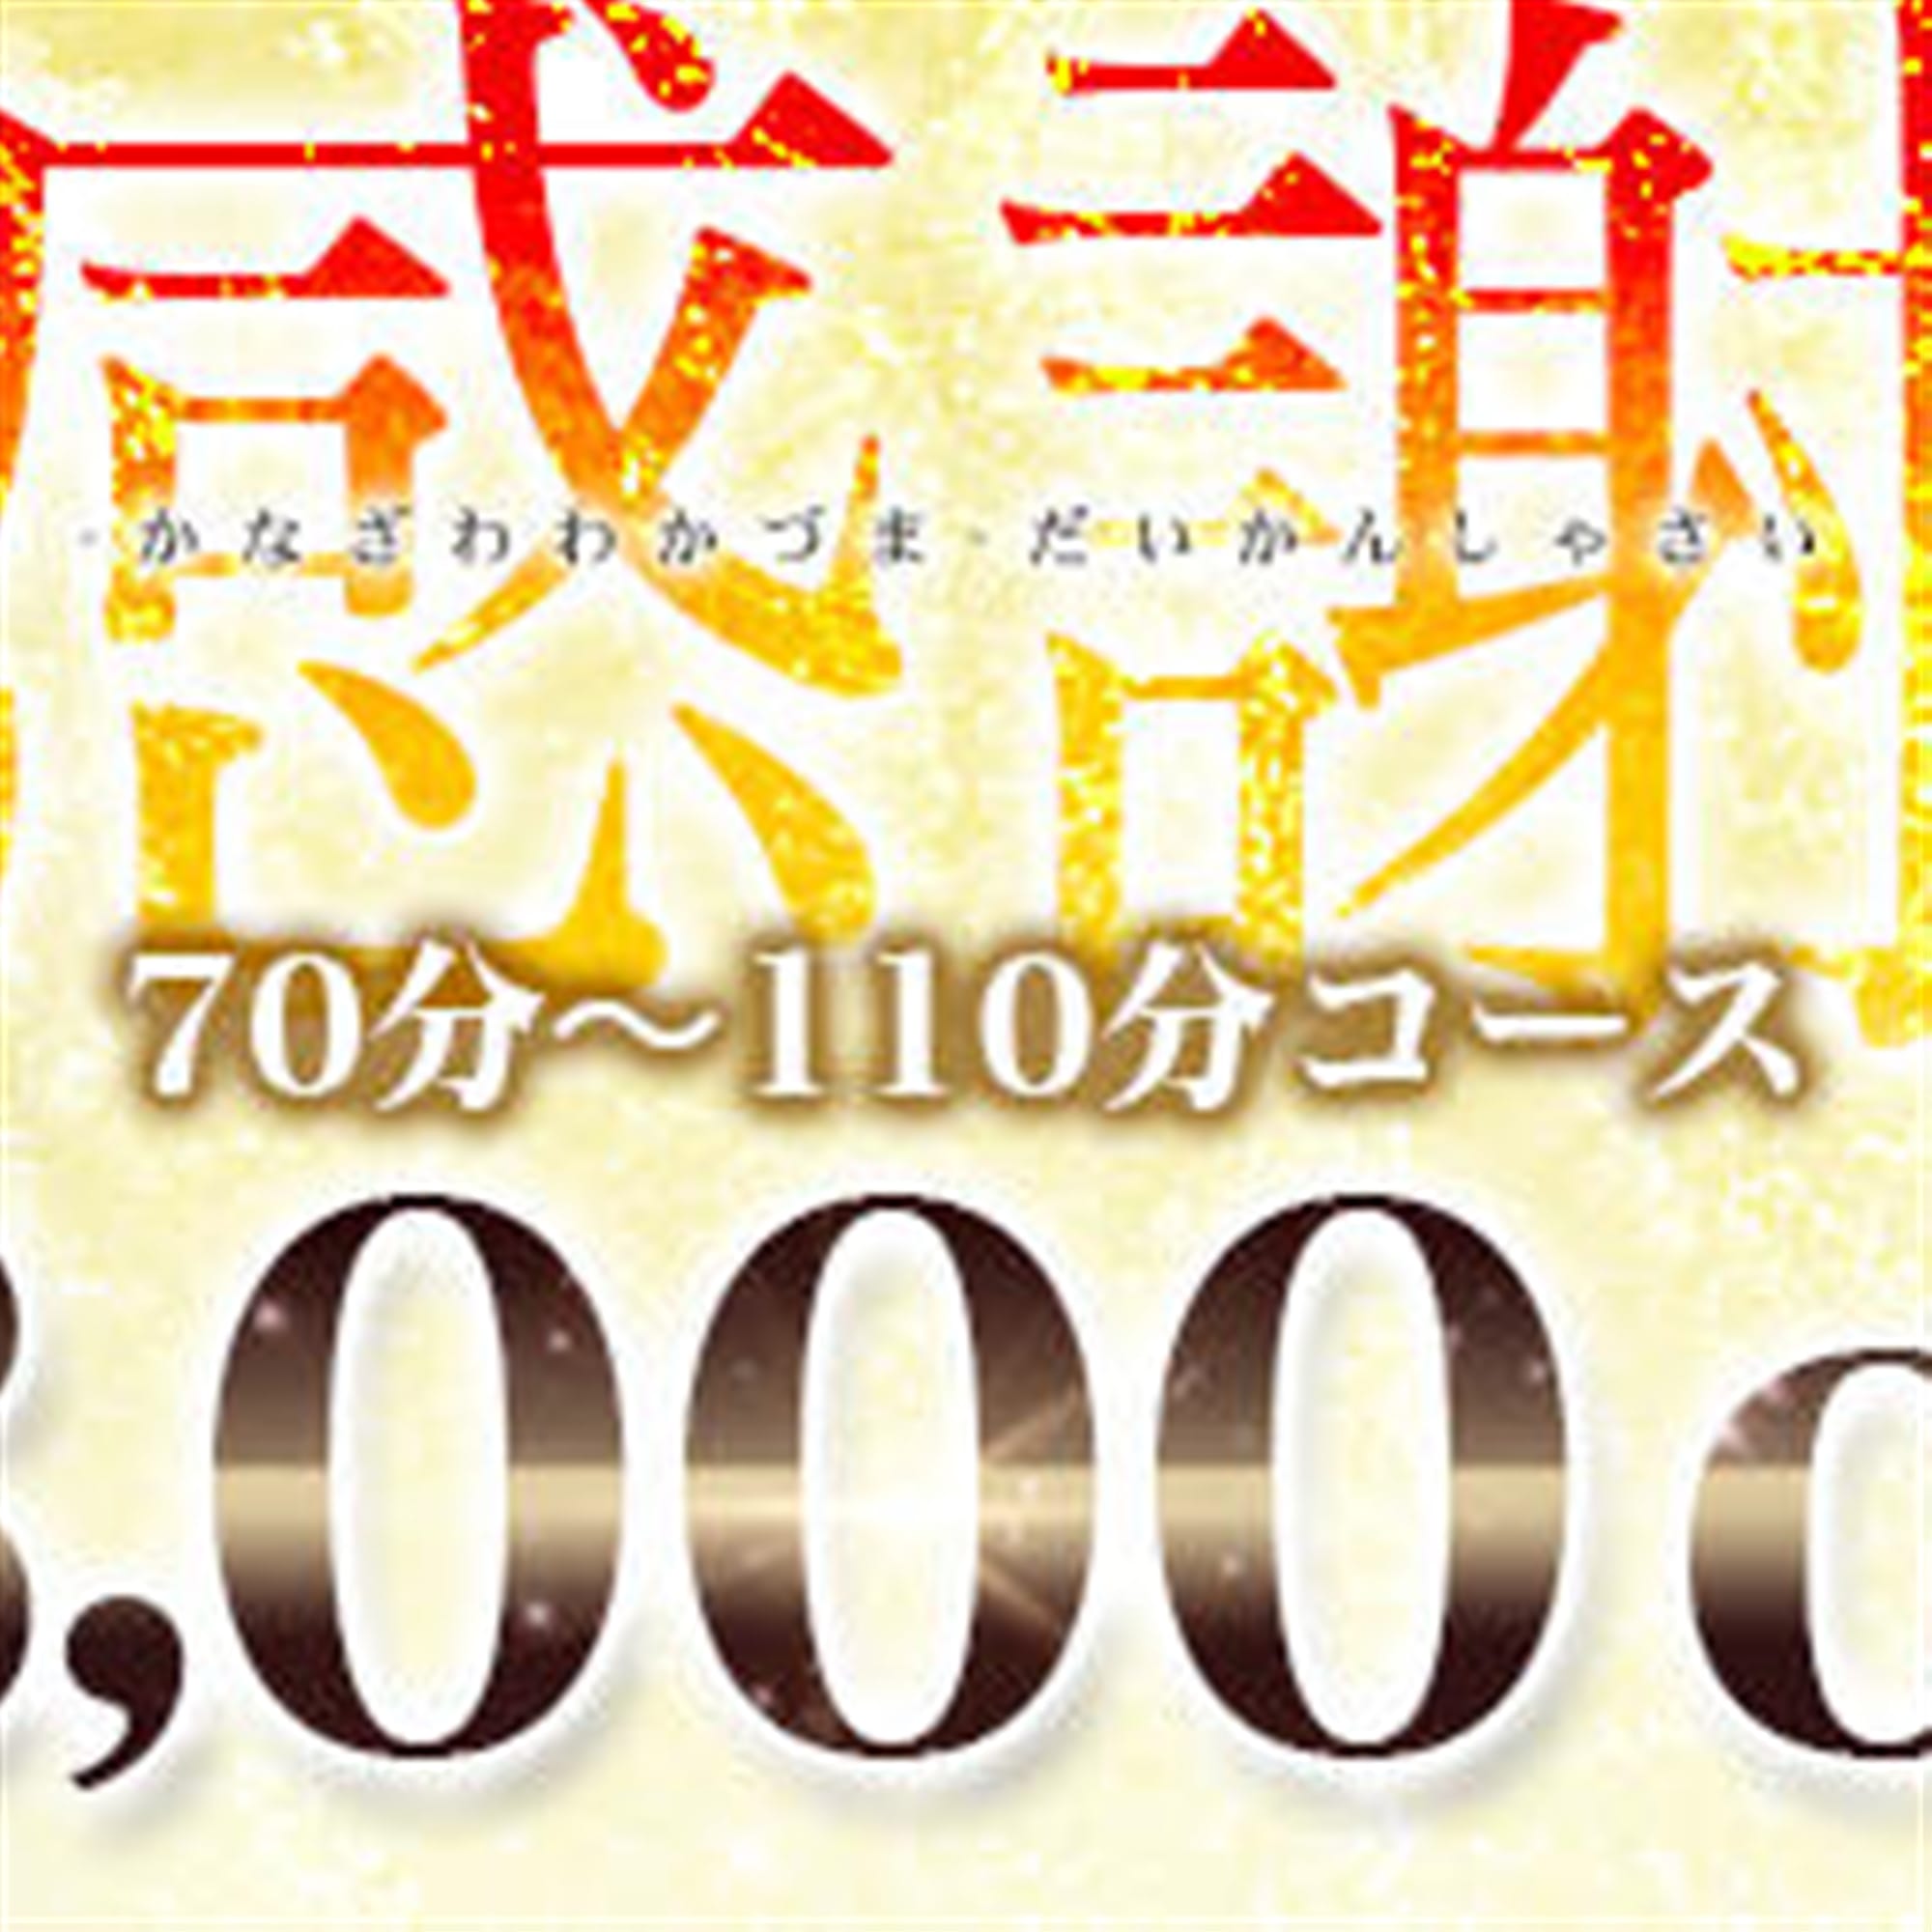 「3,000円OFFのSpecial Event+パネル指名無料」05/11(土) 01:38 | 金沢若妻のお得なニュース